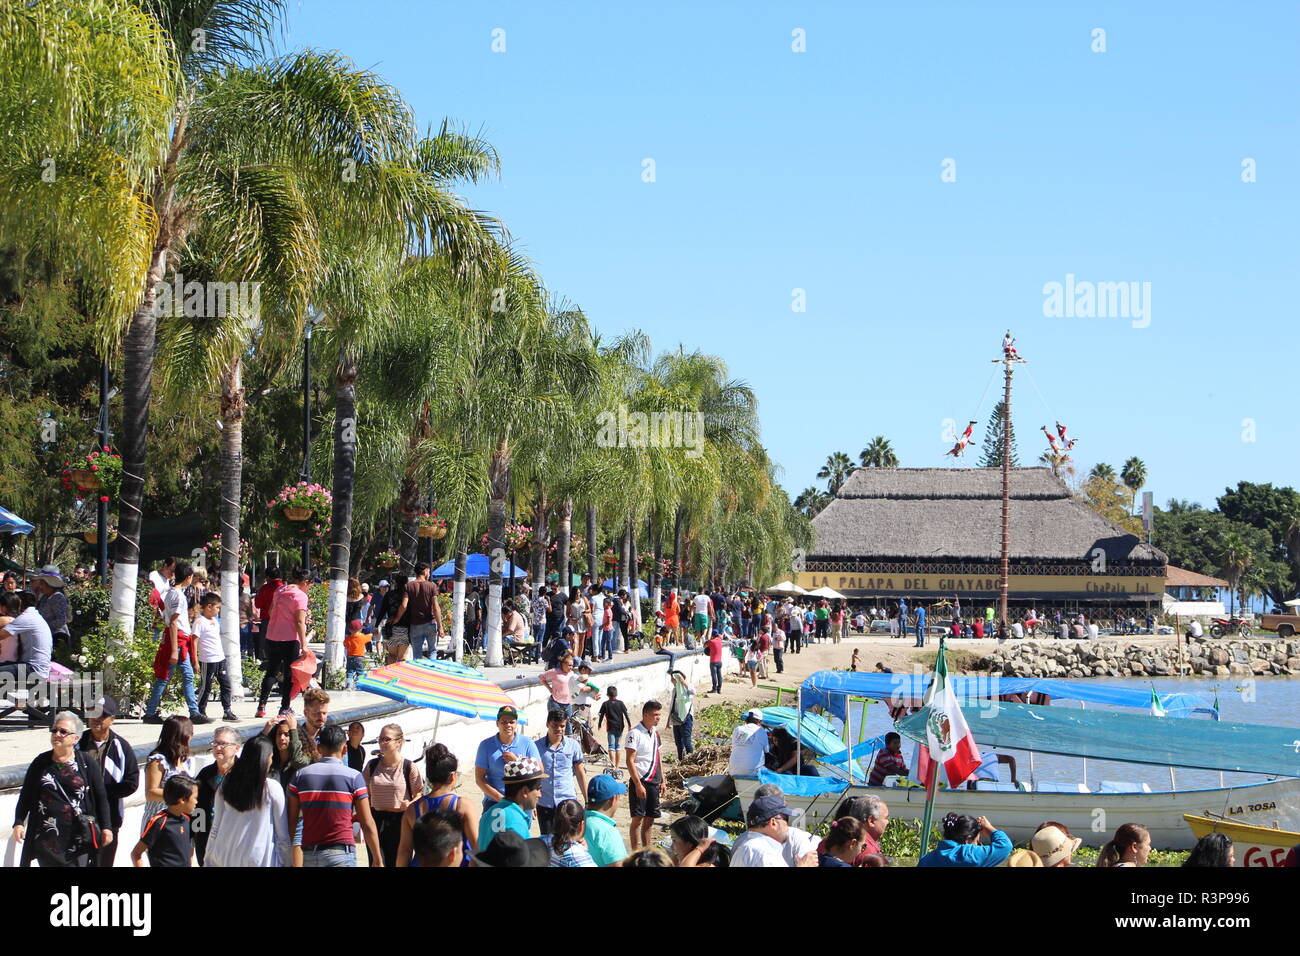 Rivera de Chapla, Jalisco, Mexico foto del malecon a orillas del lago en donde se ve a una gran multitud de gente paseando y disfrutando del lugar Stock Photo